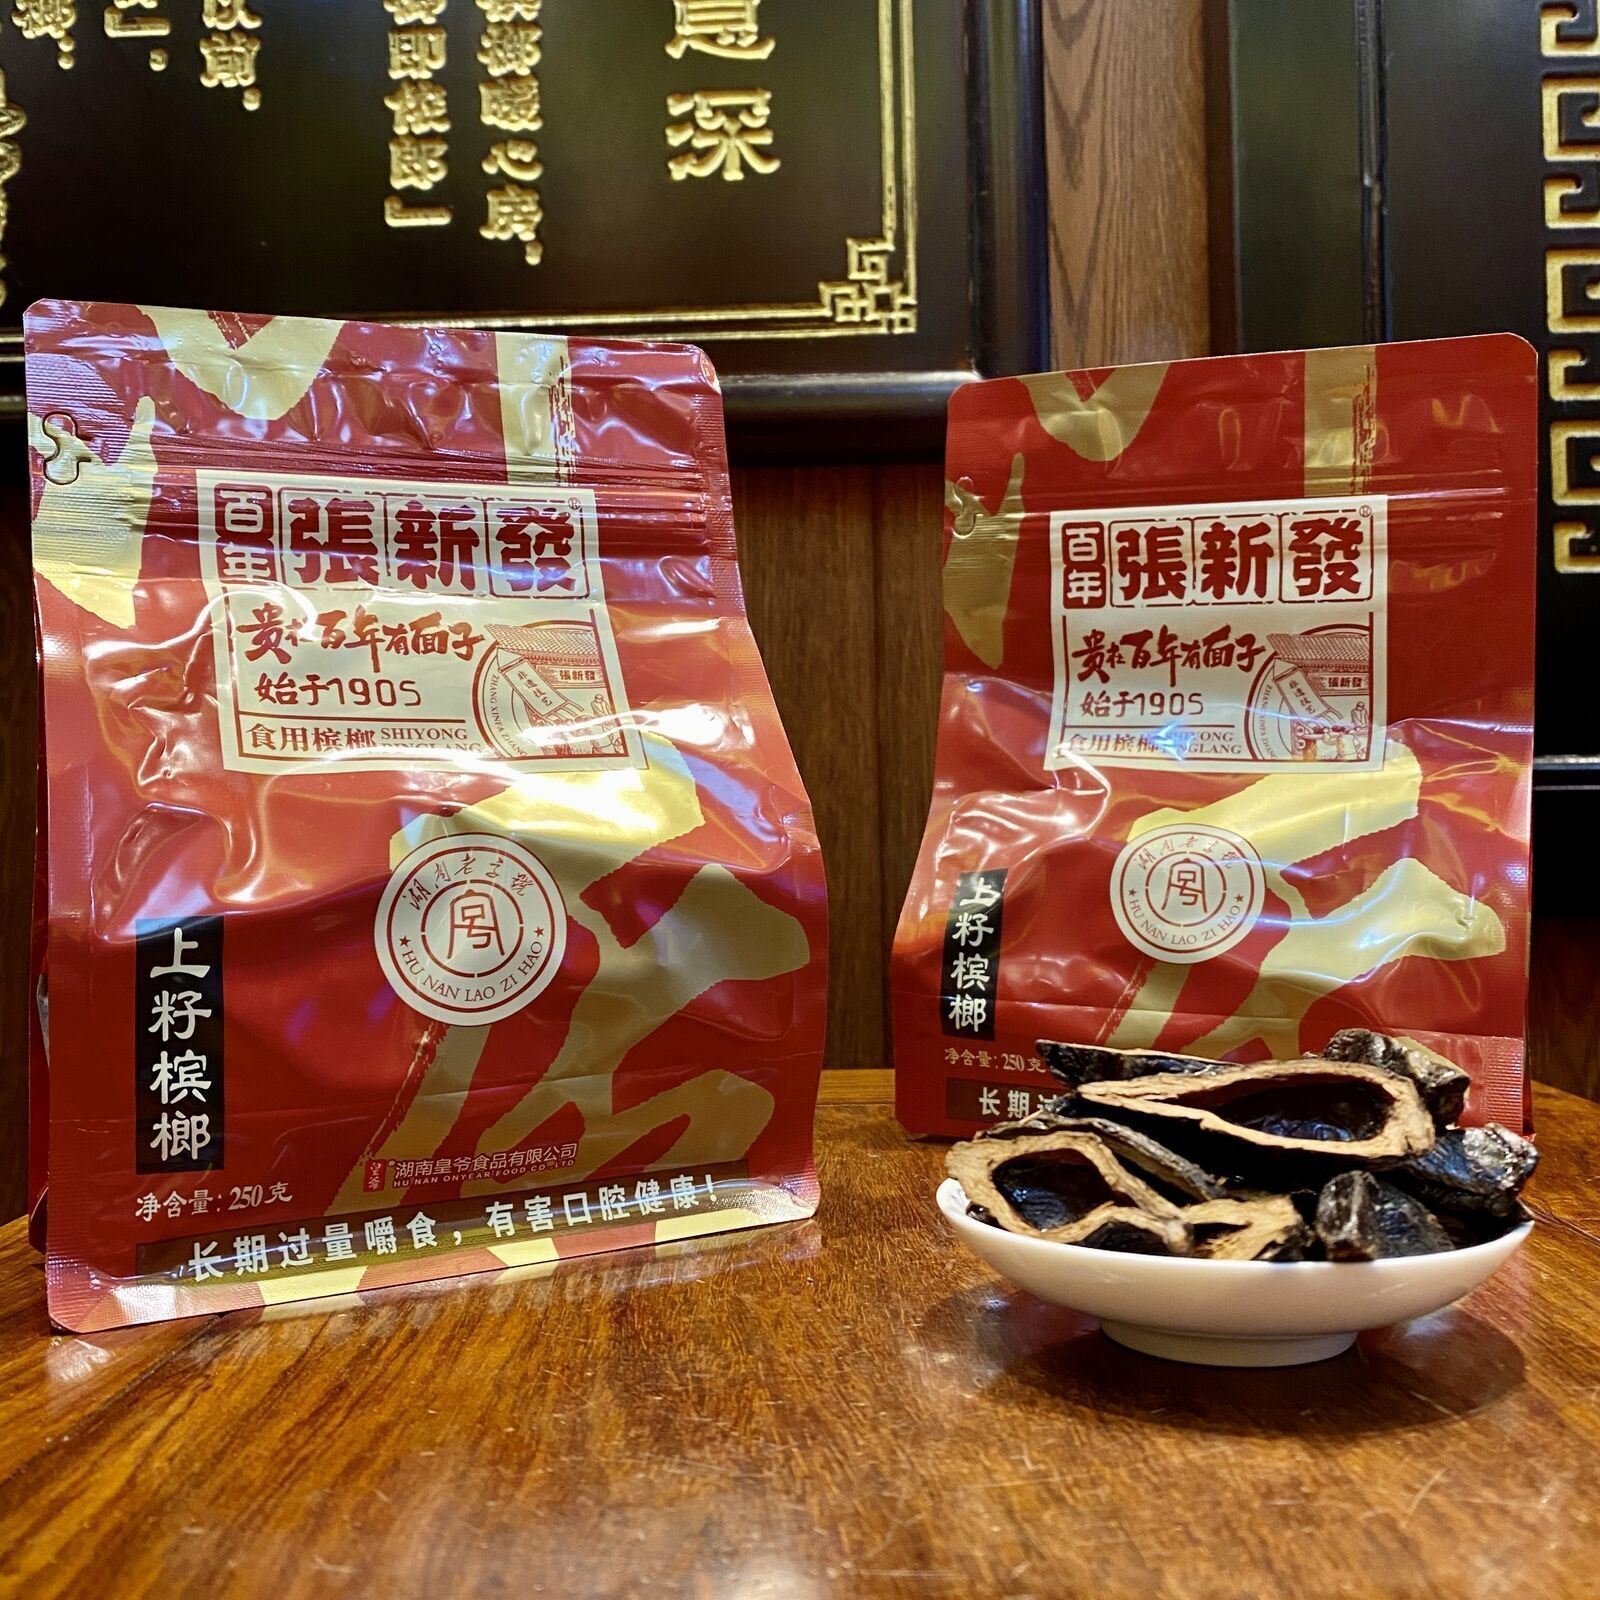 【张新发 槟榔上籽 250g】Betel nut Chinese snack  250g 中国湖南湘潭特产 